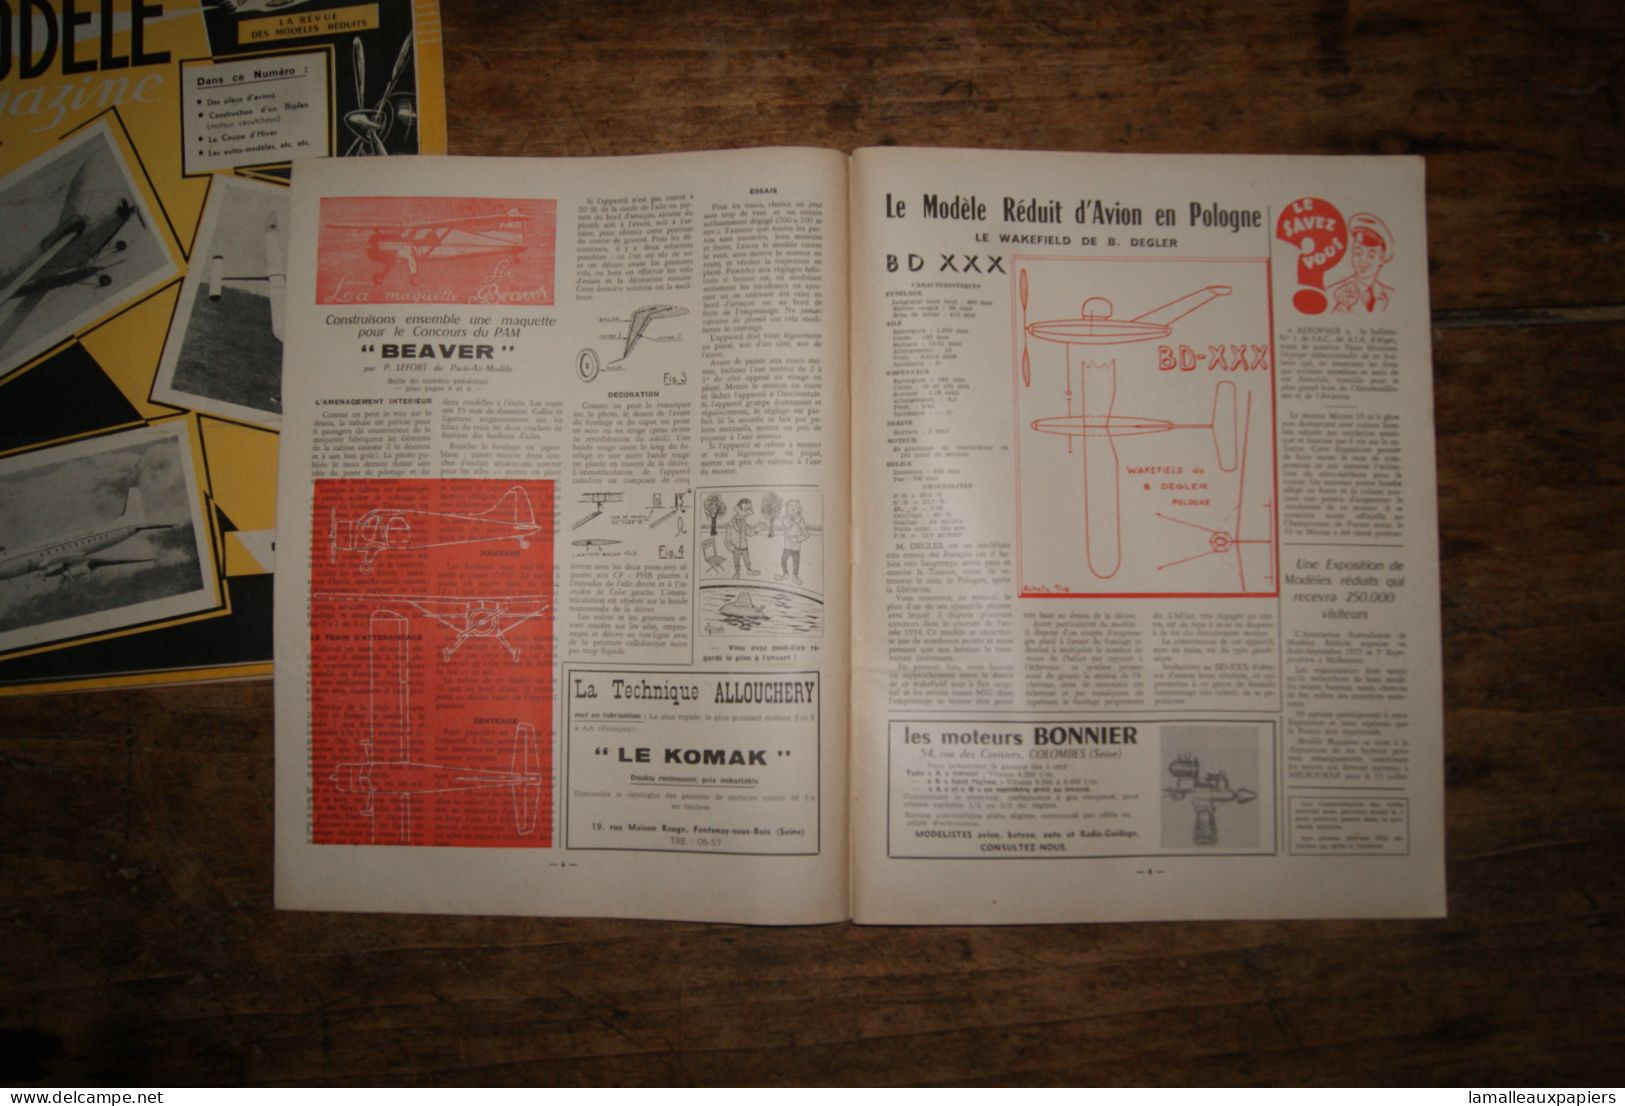 5 revues modèle magazine (aéromodélisme) 1953-1955